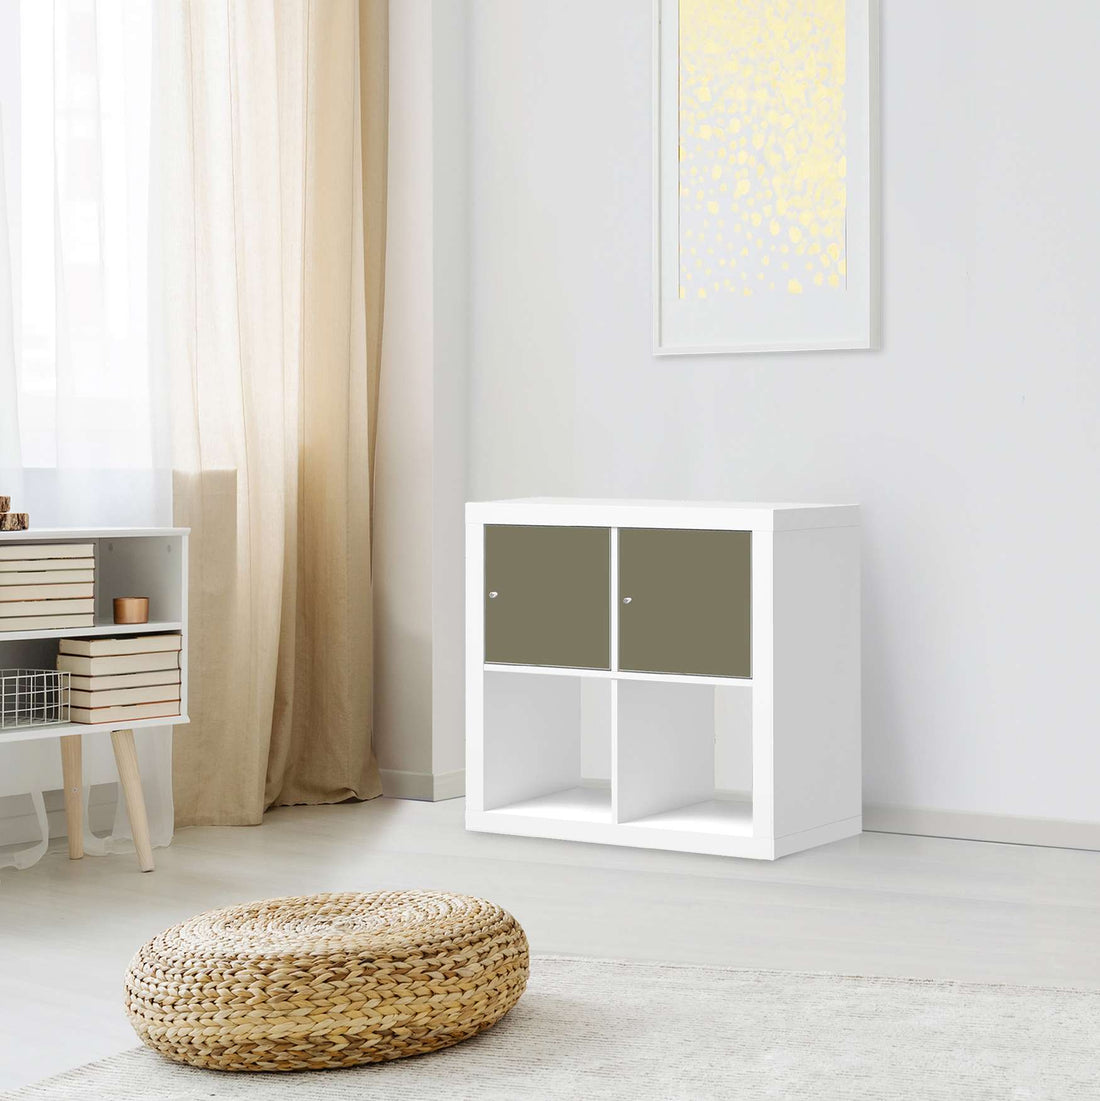 Möbelfolie Braungrau Light - IKEA Kallax Regal 2 Türen Quer - Wohnzimmer